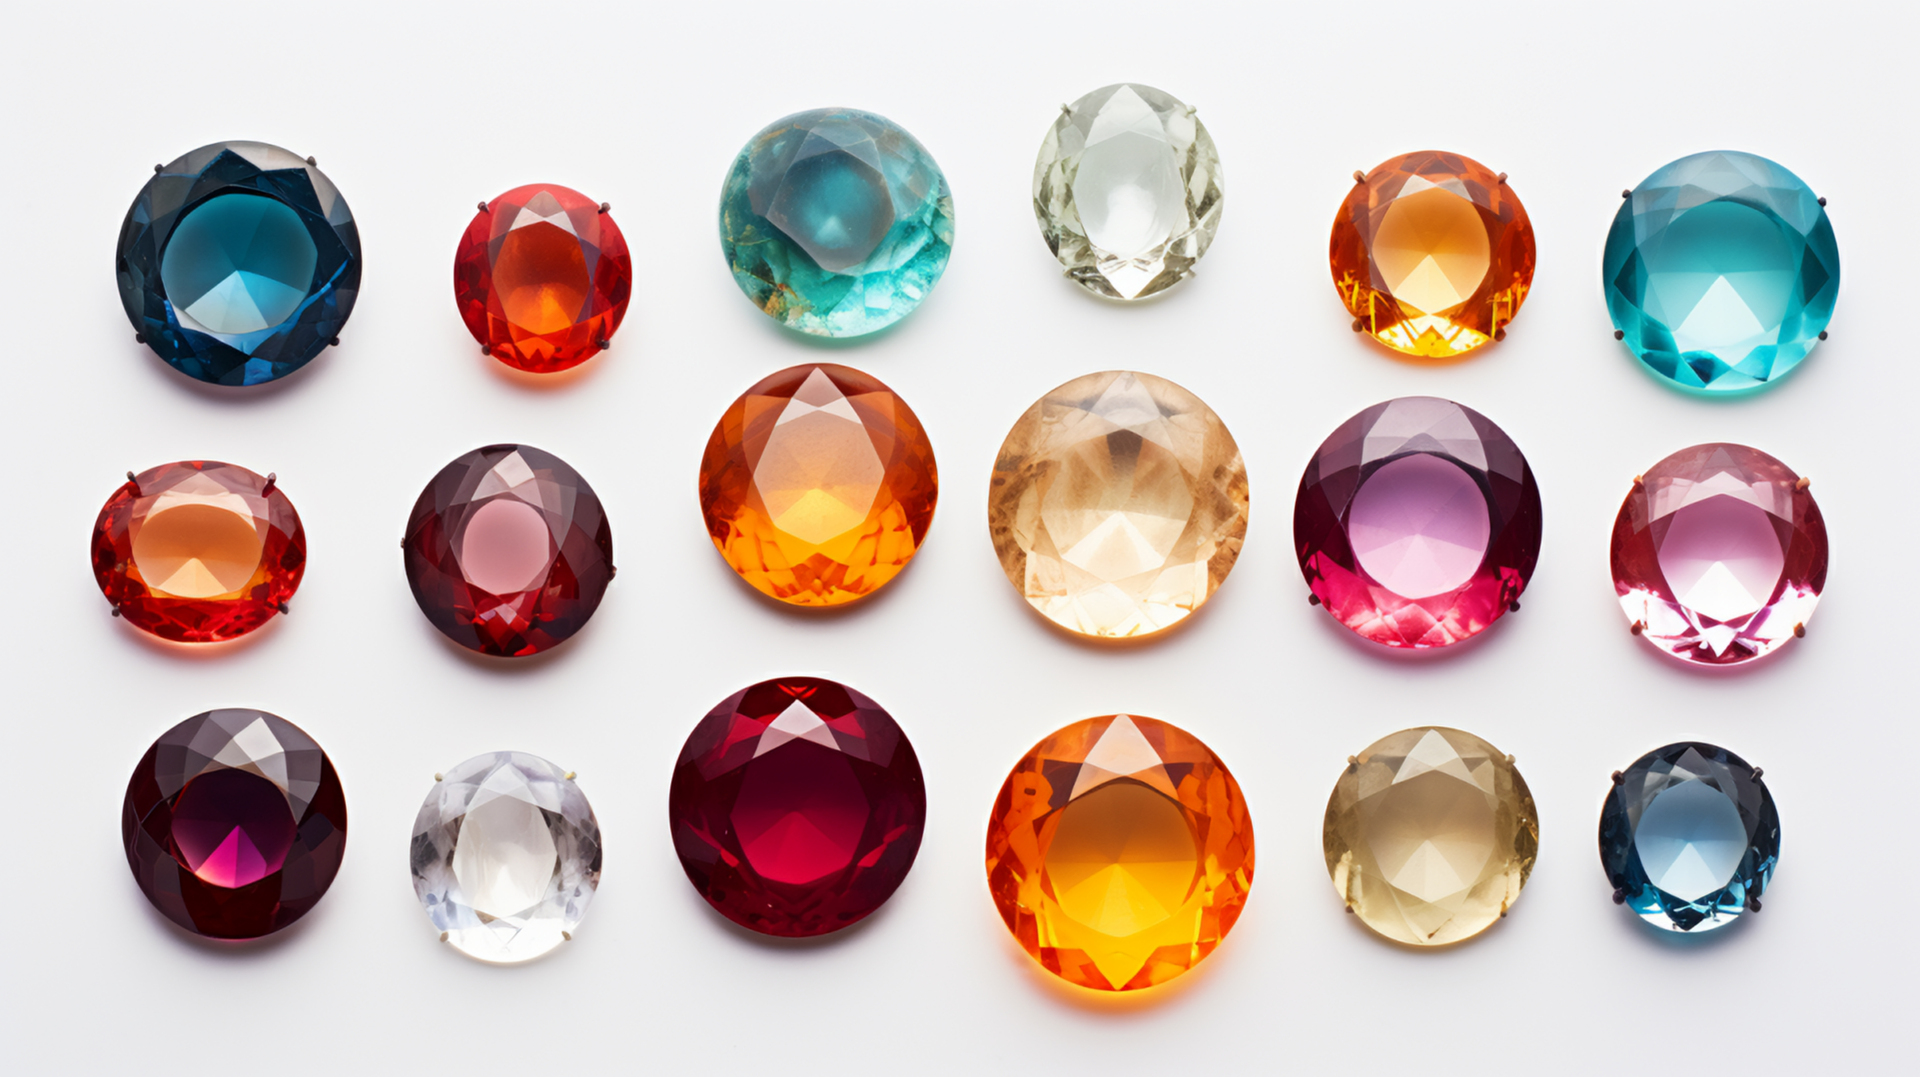 Jak vybrat ten správný šperk podle barevné typologie?